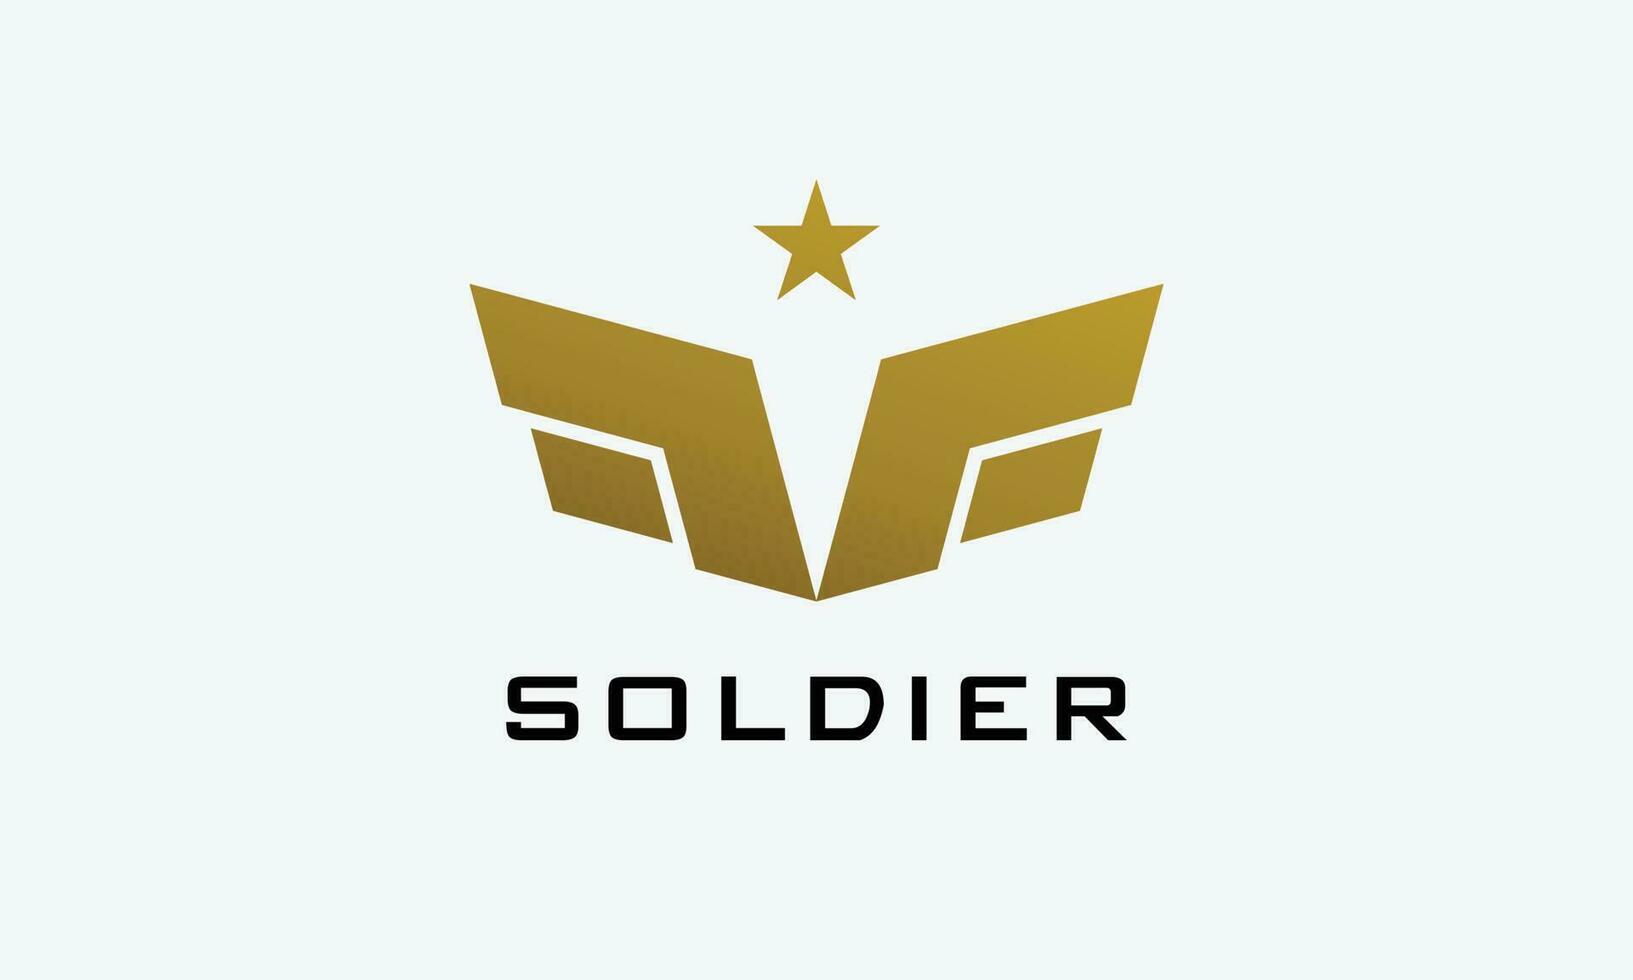 Logo Vektor Gold Farbe Ranger Flügel Star Heer Schild Sicherheit Symbol Macht Schulter Konzept Militär- stark Macht Sicherheit Nation Land Leistung